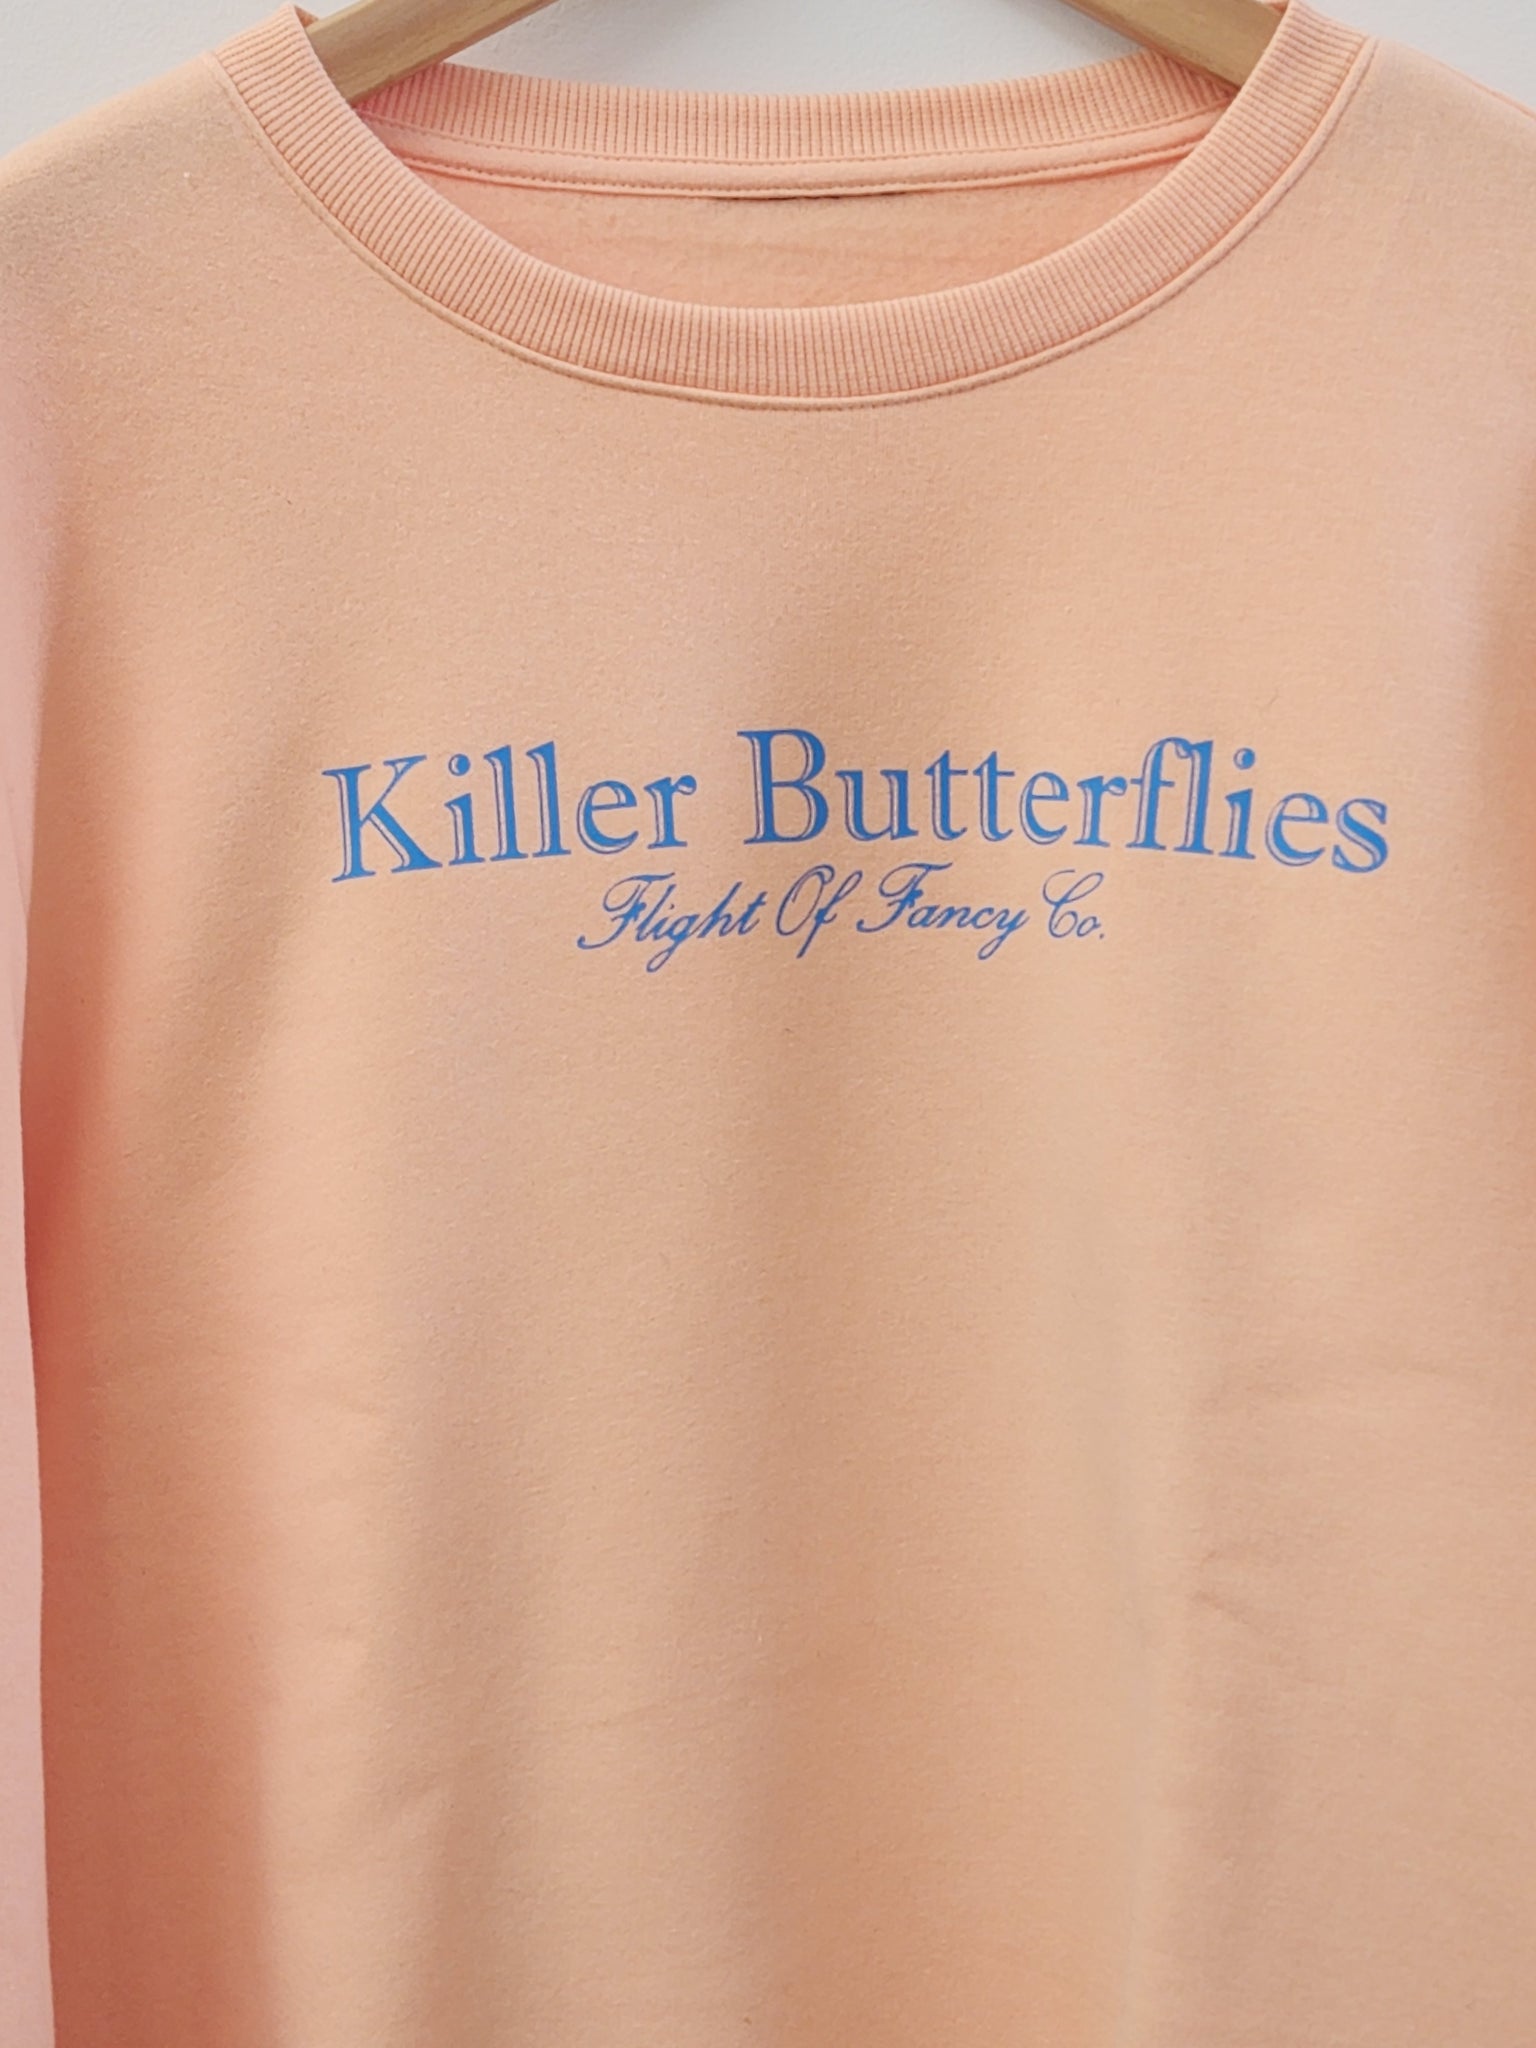 Killer Butterflies Peach Crewneck